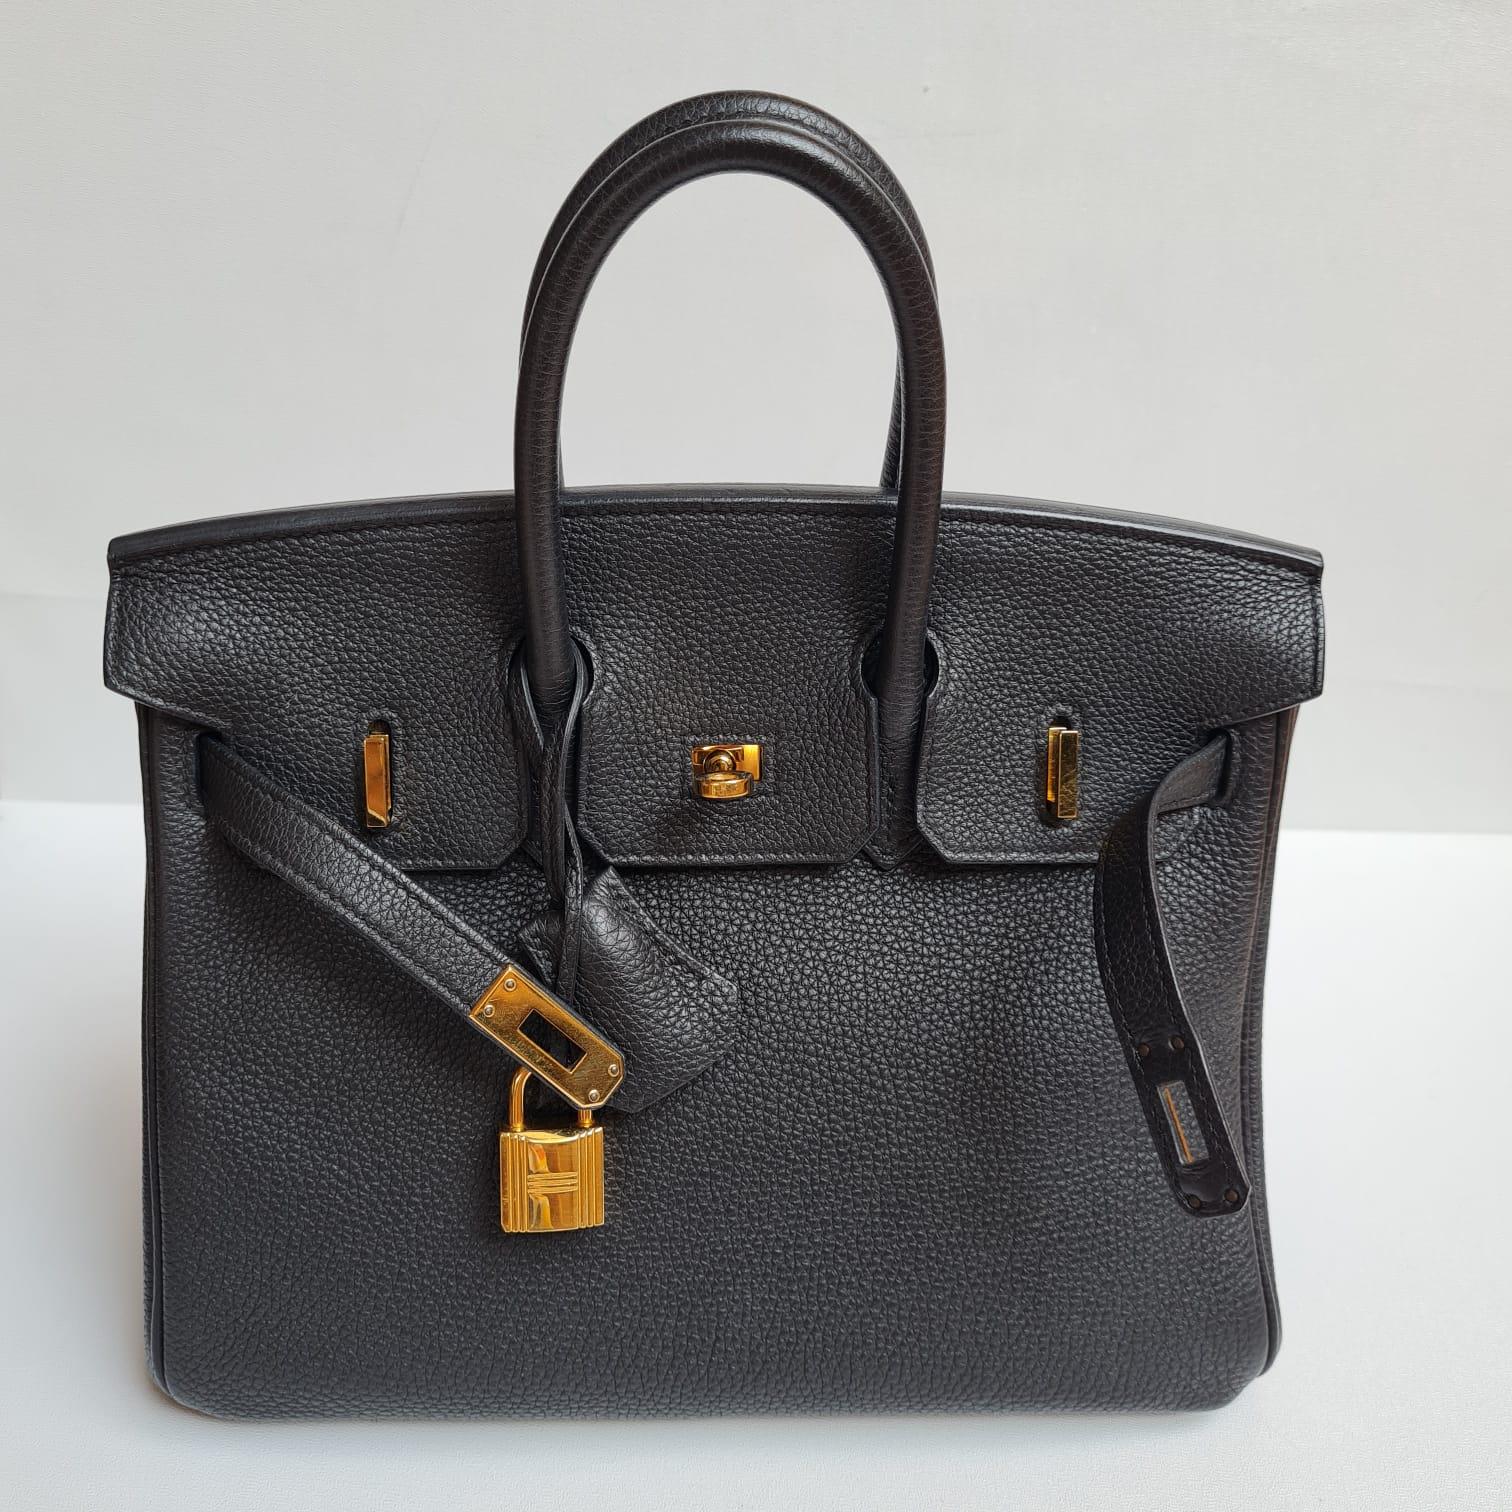 Hermes Birkin 25 Togo Black GHW Bag For Sale 6